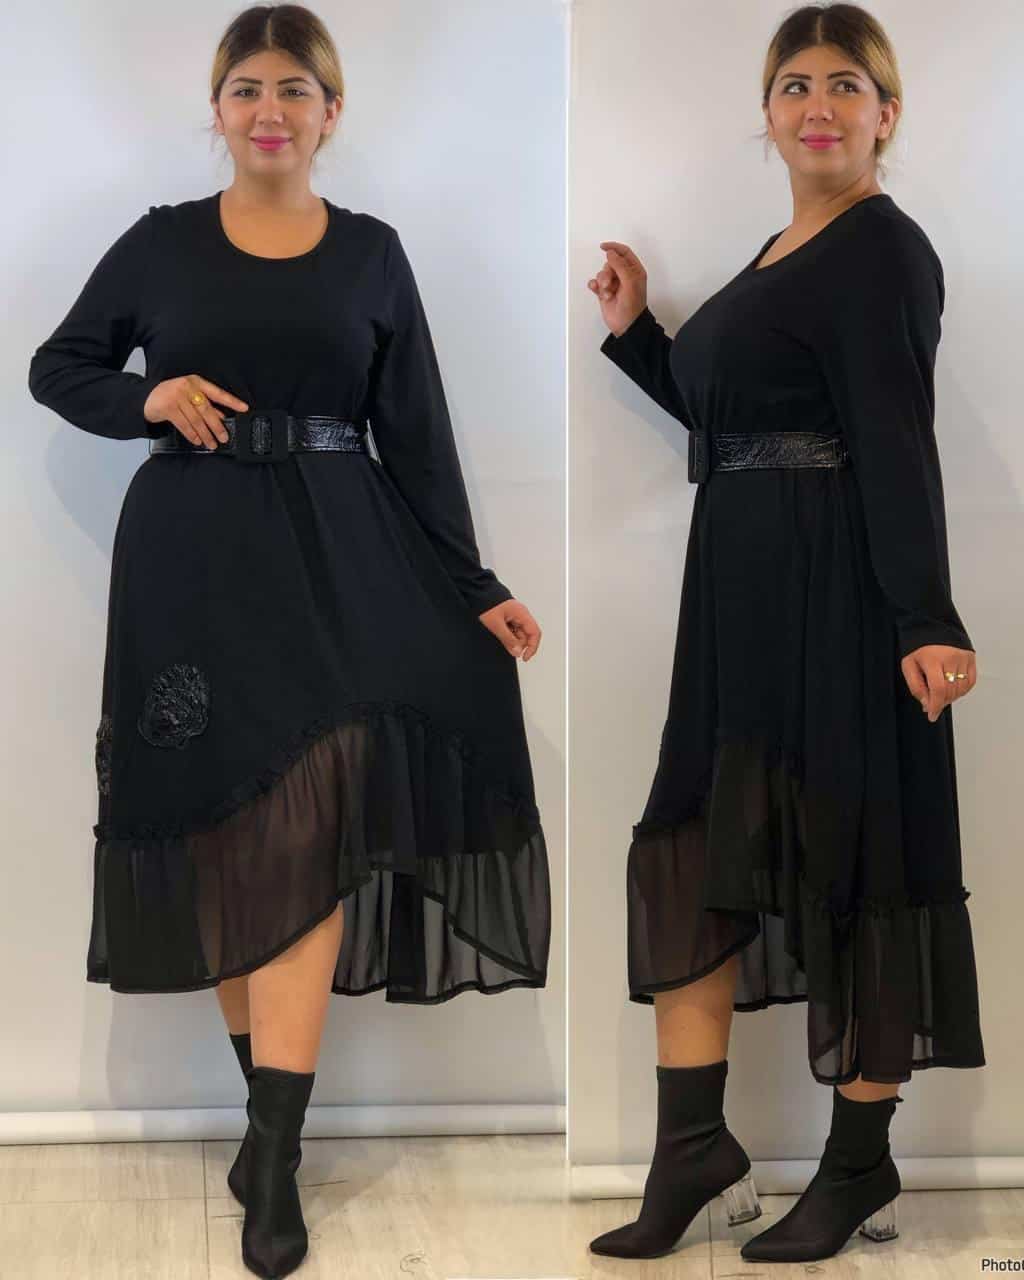 שמלה מעוצבת לנשים במידות גדולות בצבע שחור